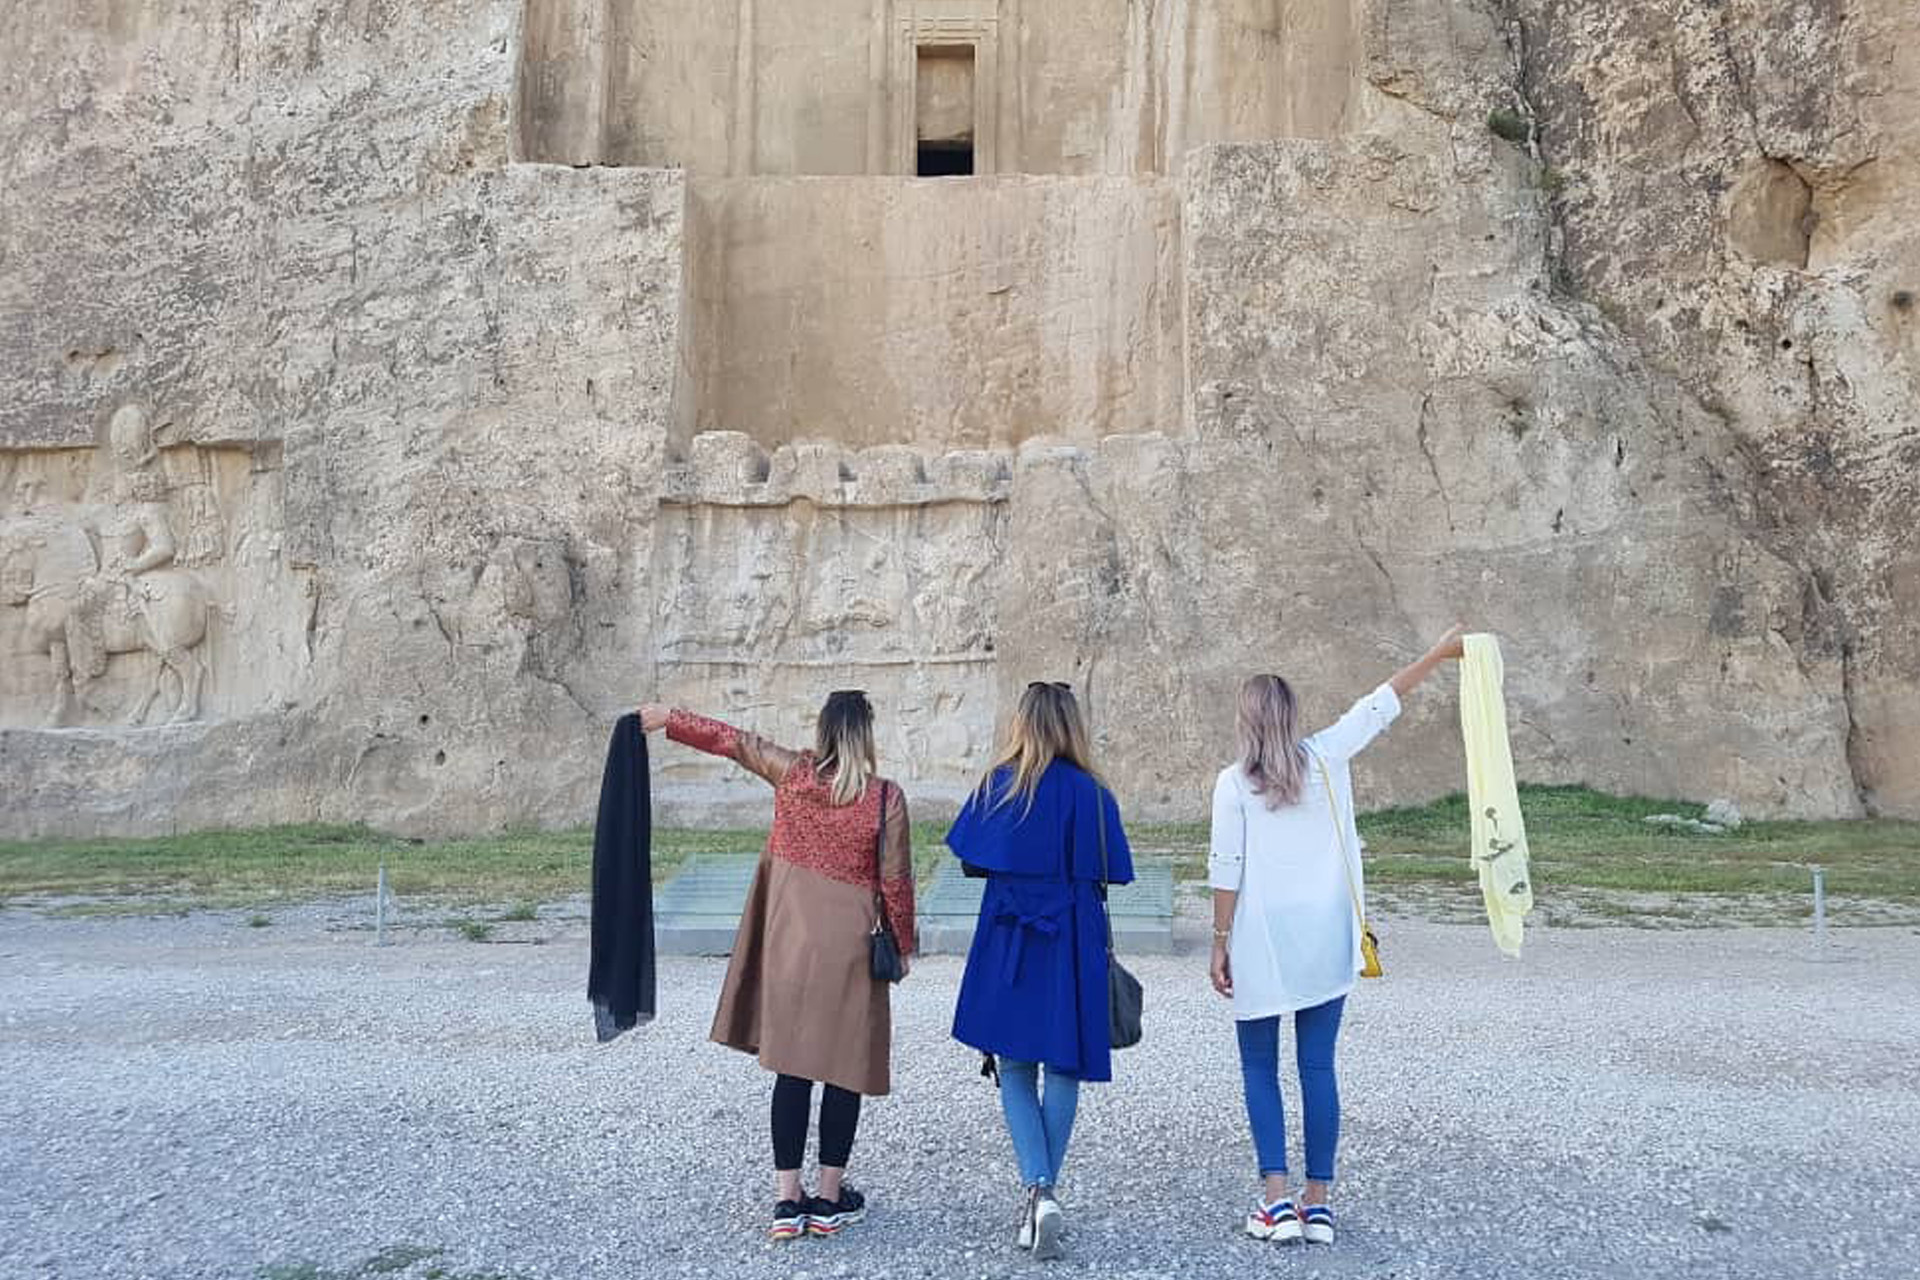 Tři západně oděné ženy stojí před skalním chrámem a odhazují muslimské šátky.